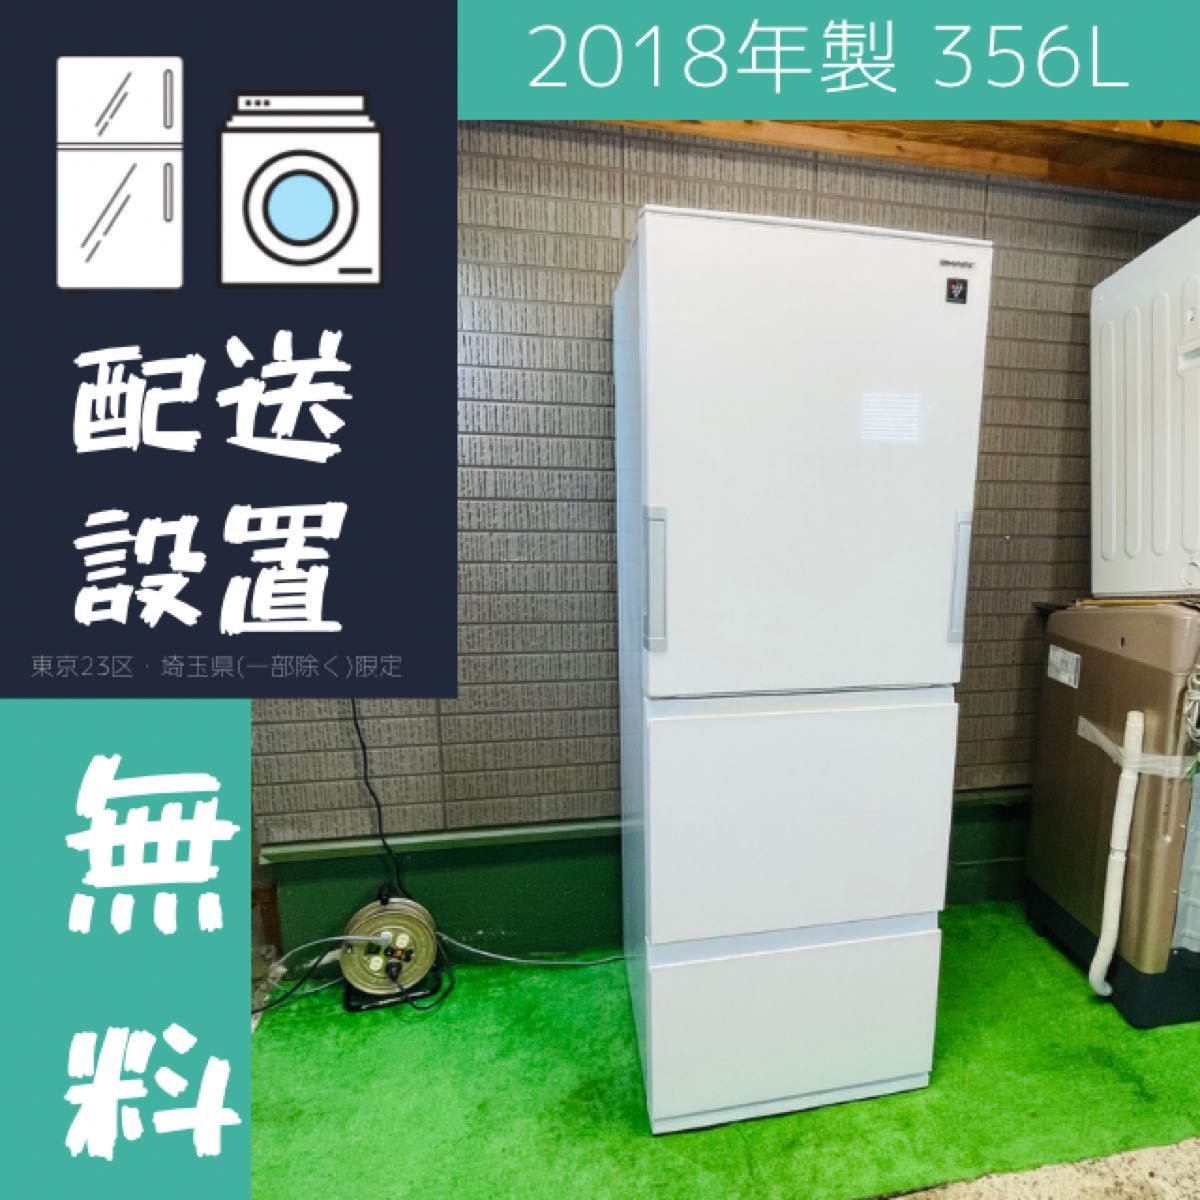 SHARP 410L 冷蔵庫 おしゃれグラデーション レッド【地域限定配送無料】